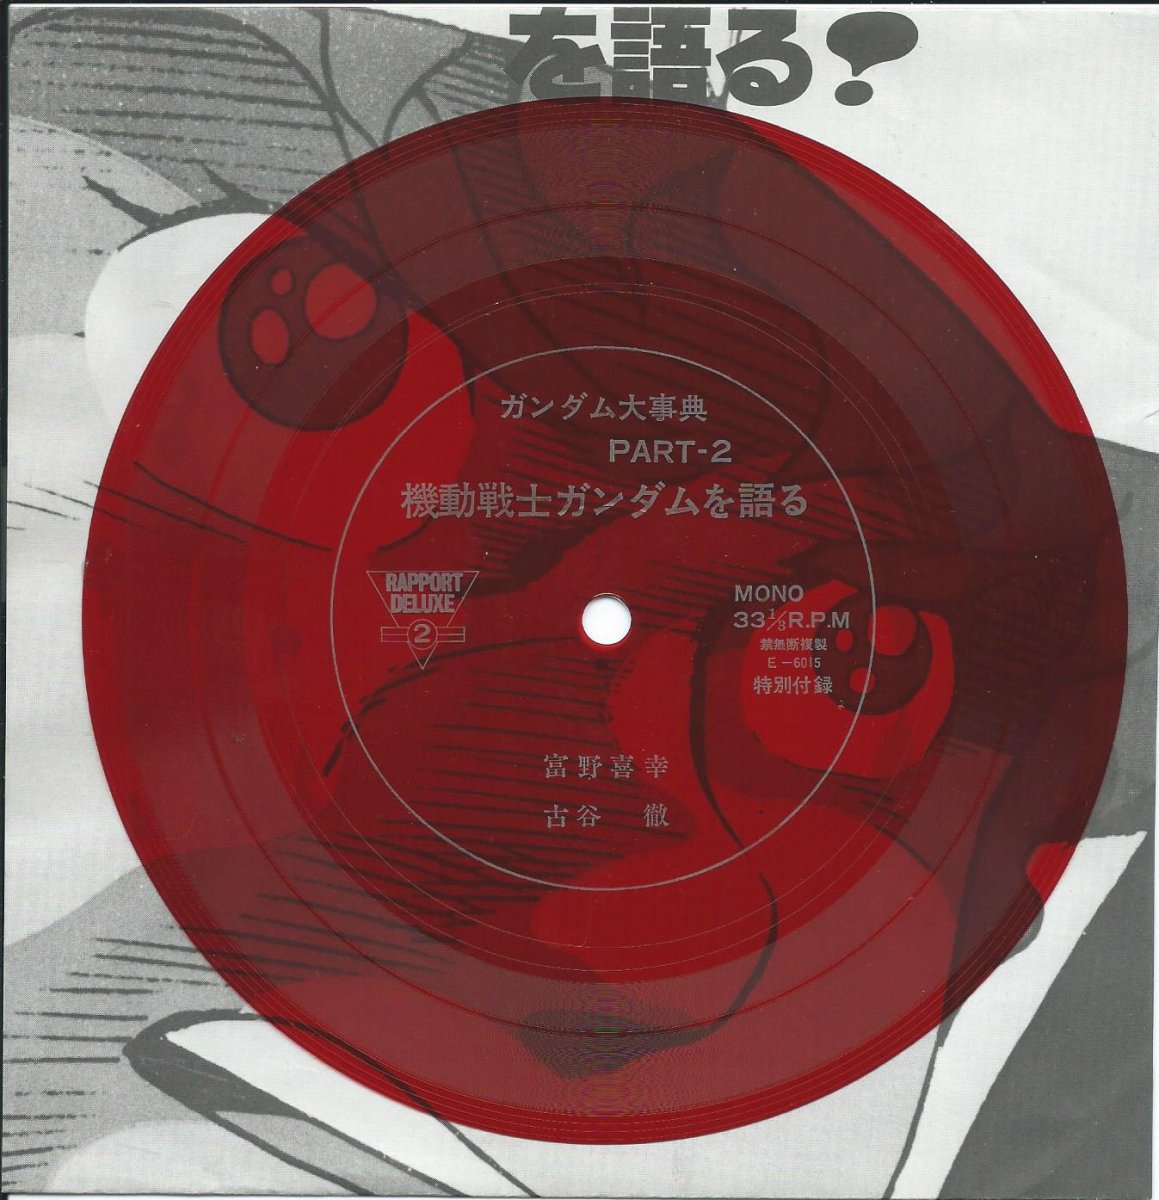 機動戦士ガンダム効果音集 Mobile Suit Gundam Special Sound Effect Disk 7 7 ソノシート Hip Tank Records